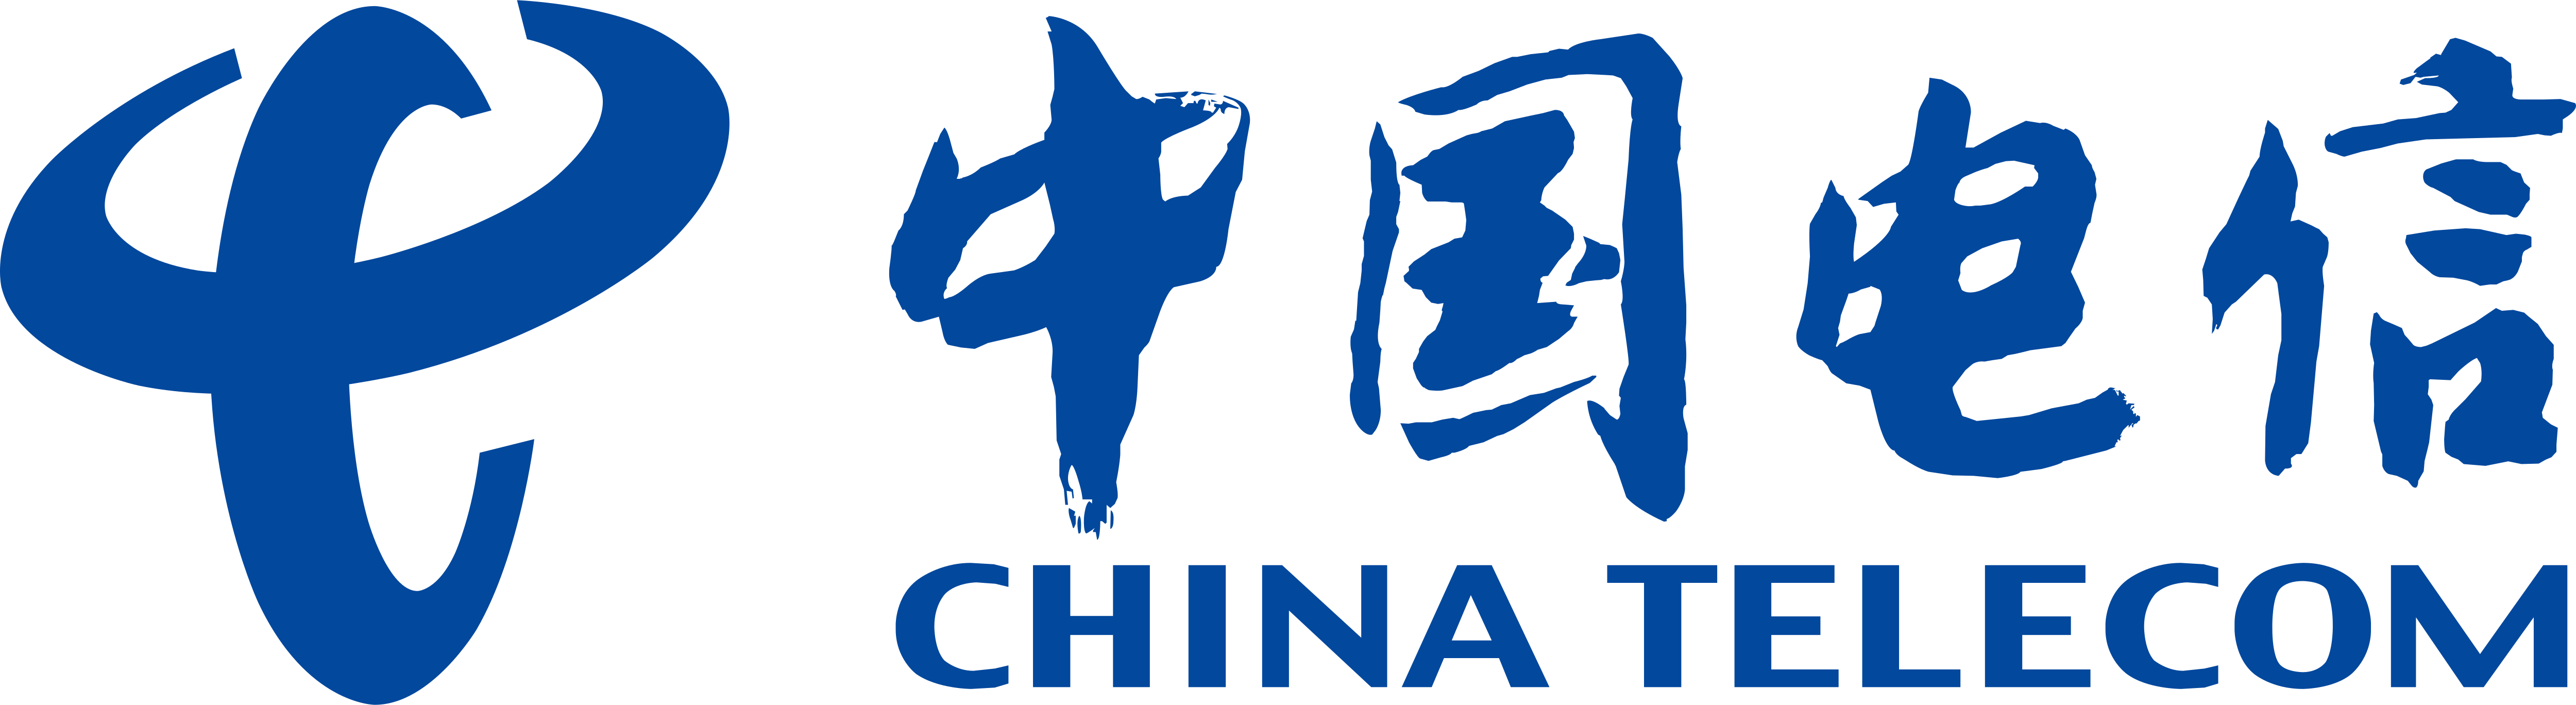 China_Telecom-min